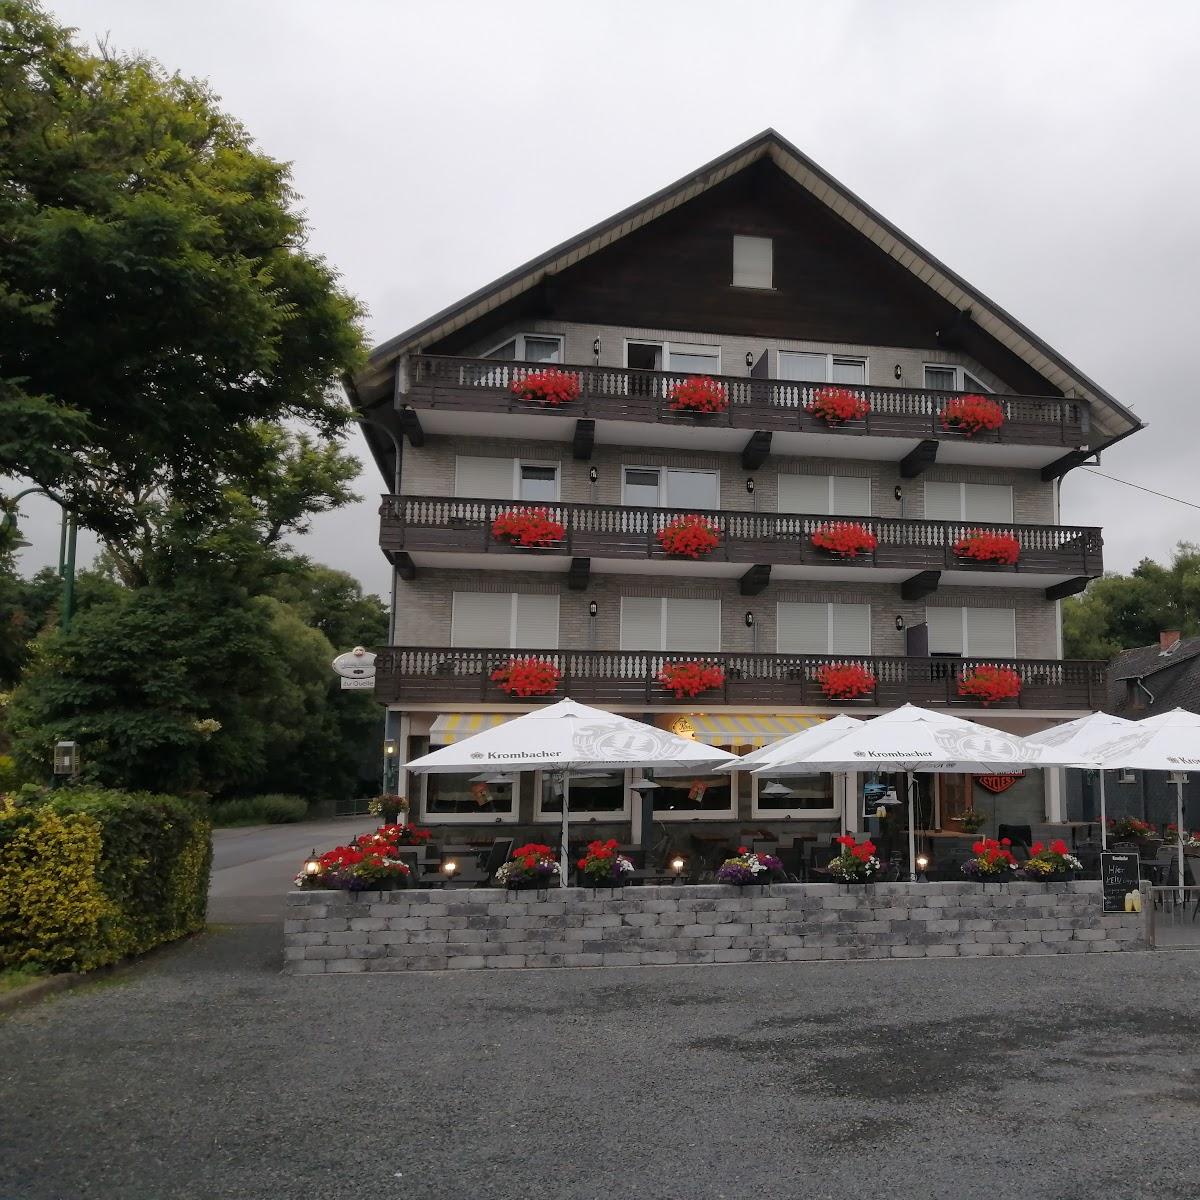 Restaurant "Landgasthaus Zur Quelle" in Nistertal